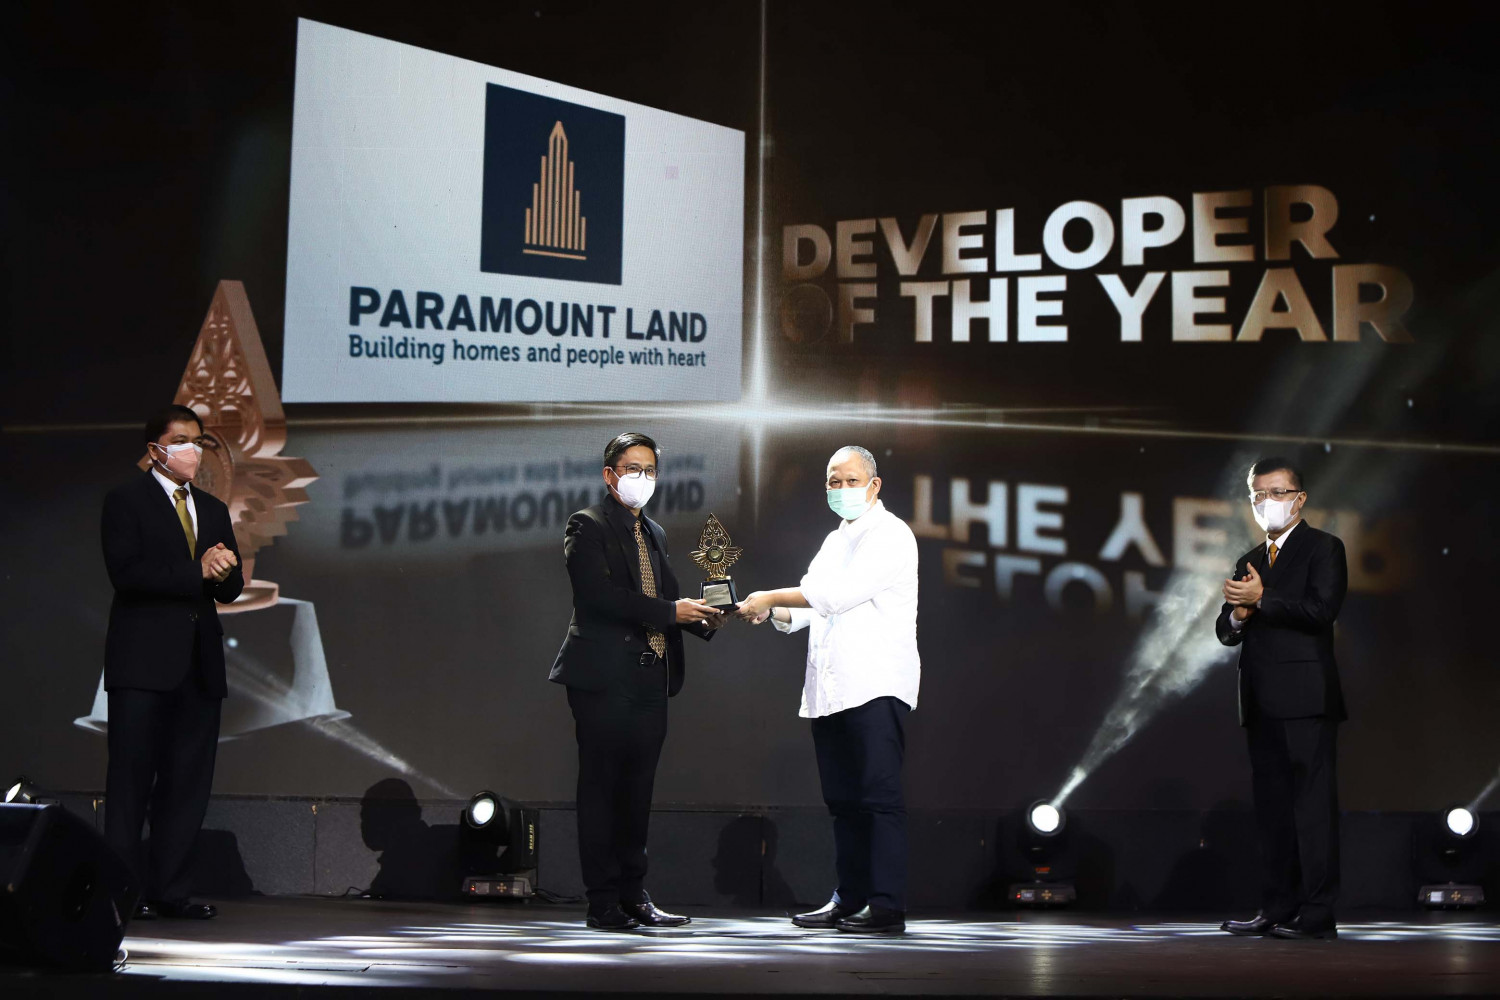 Paramount Land Raih Penghargaan “Developer of The Year”